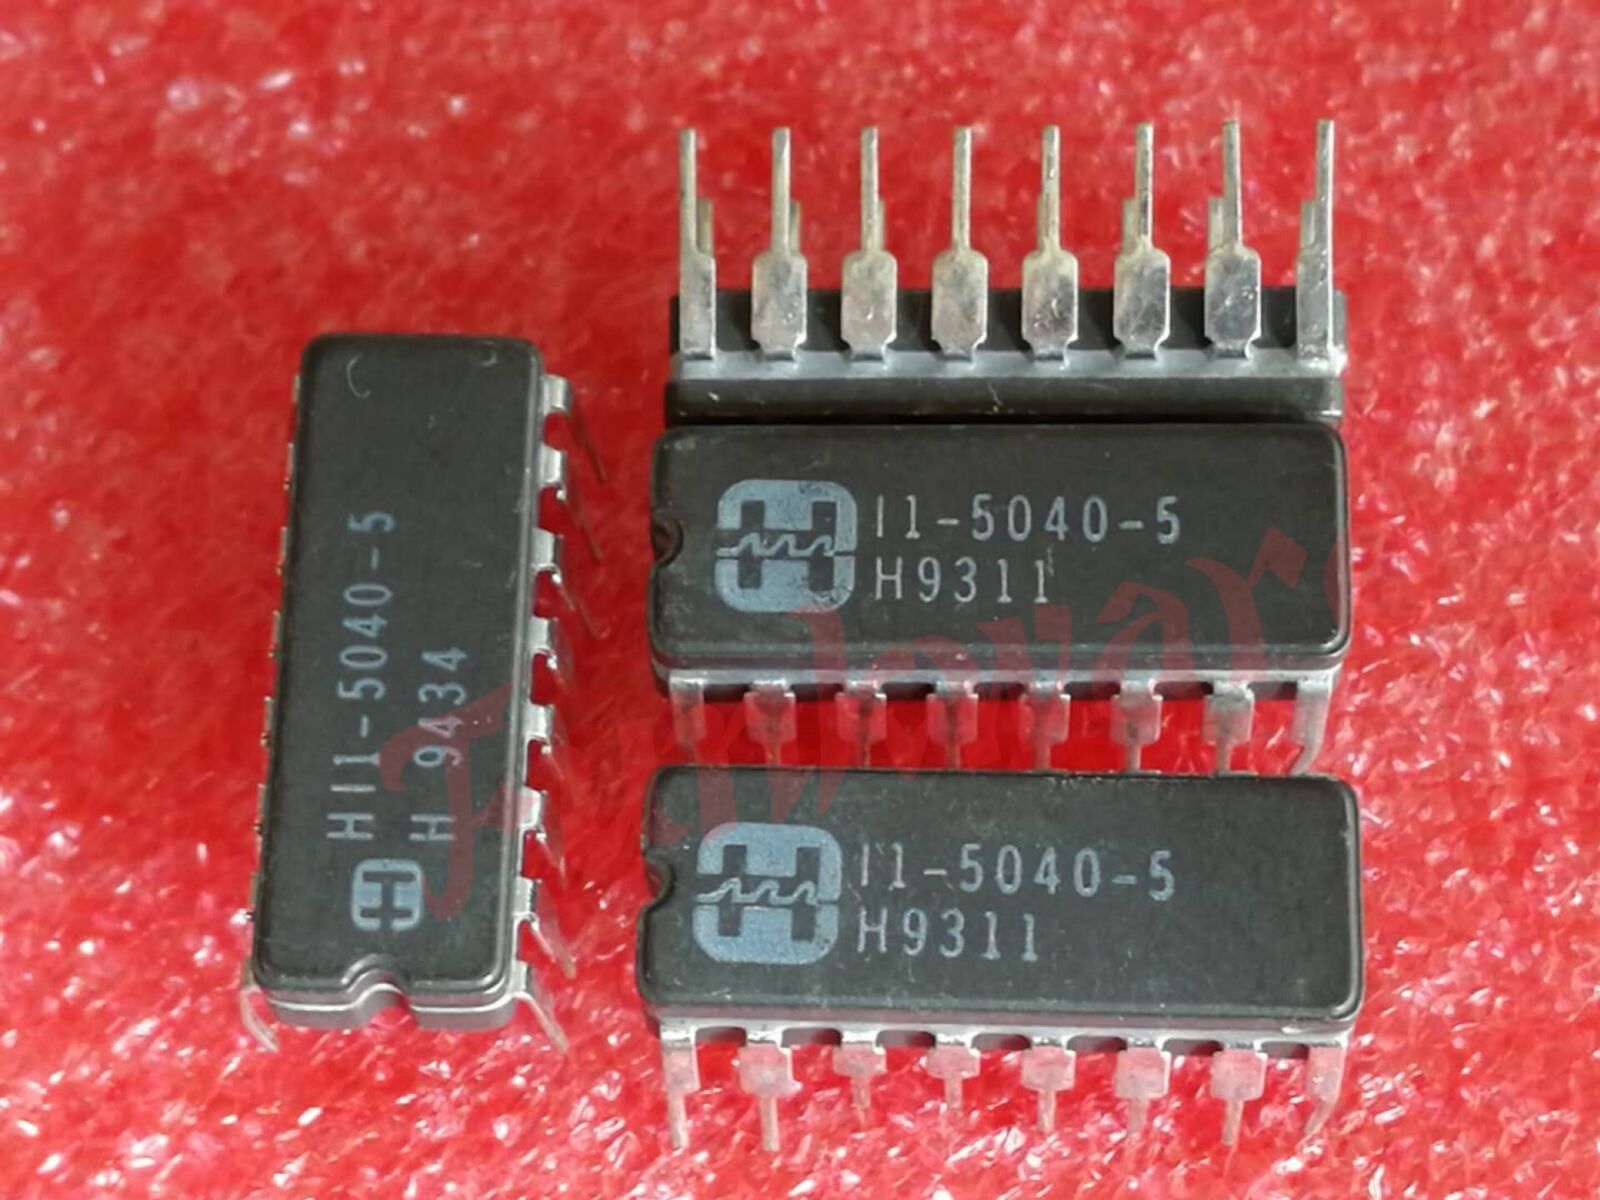 New HI1-5040-5 I1-5040-5 Harris Semiconductor DIP16 x5PCS